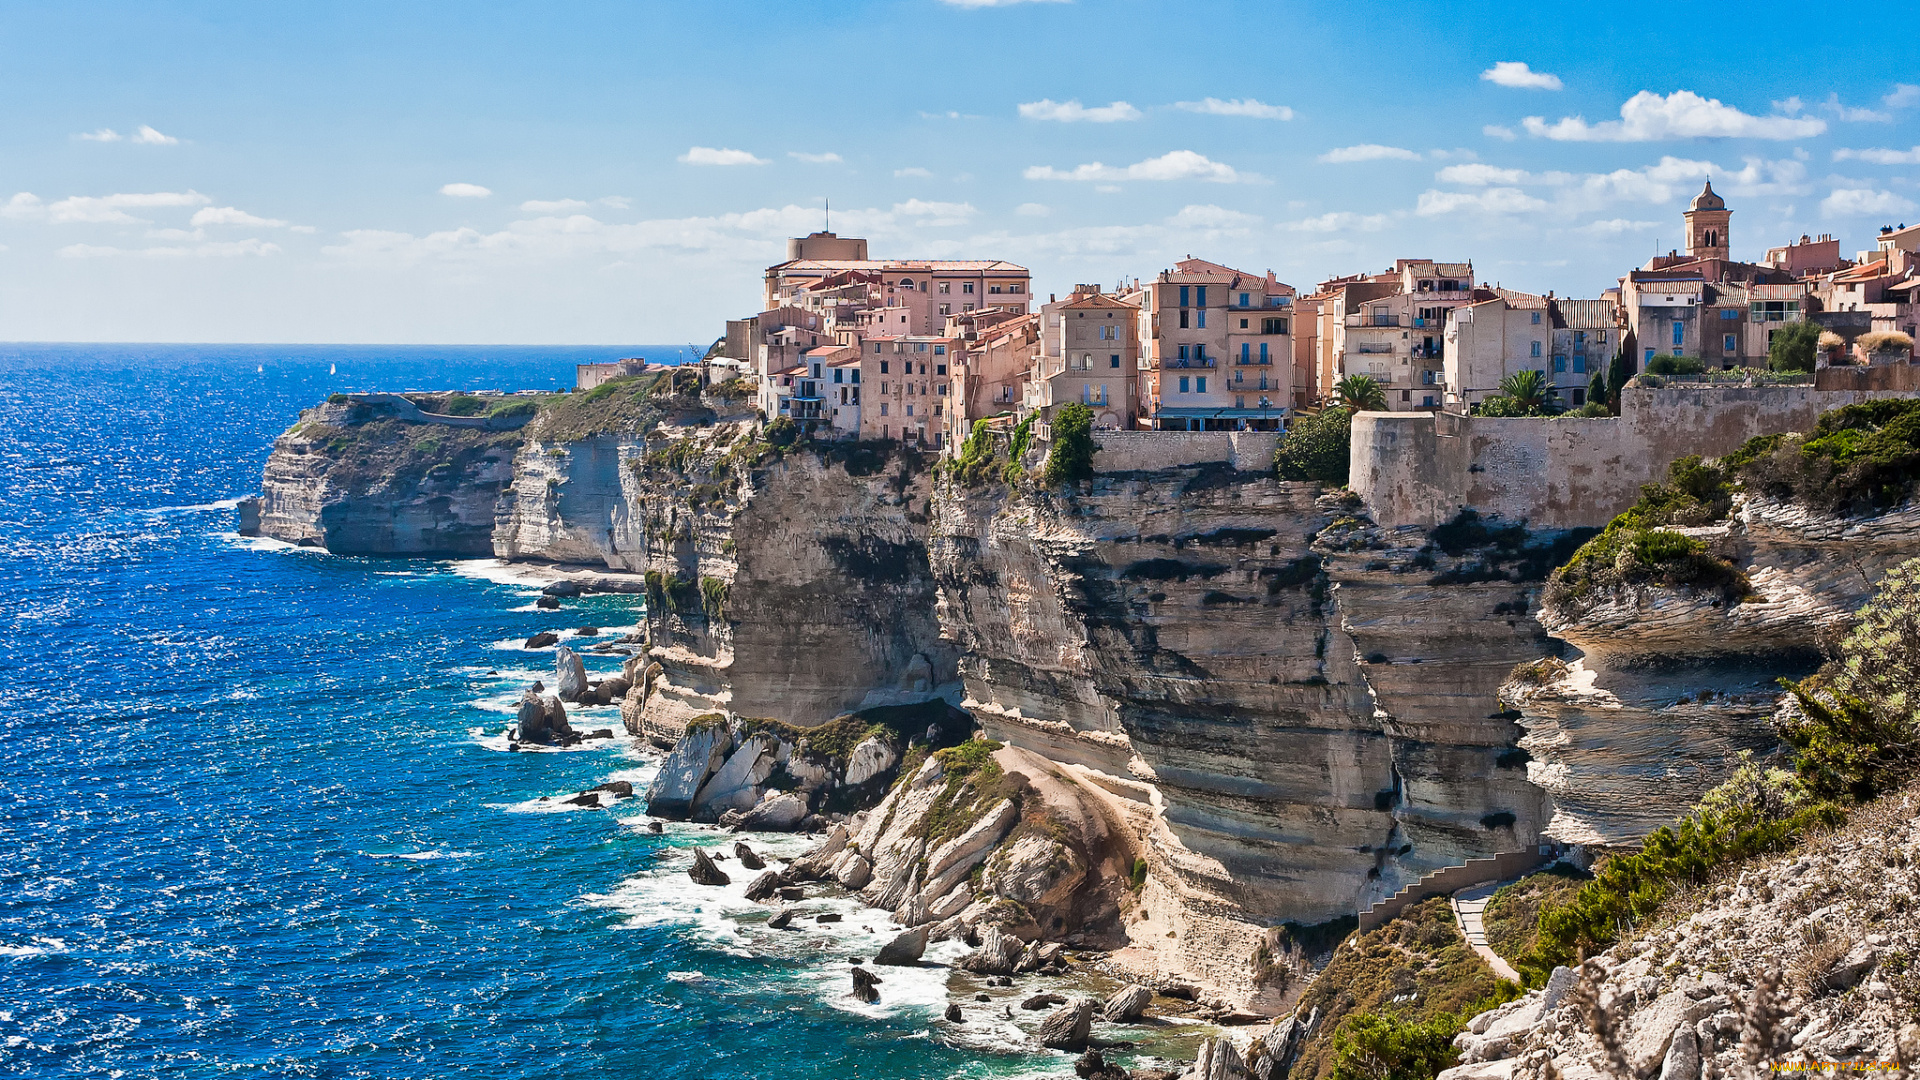 bonifacio, corsica, france, города, пейзажи, море, скалы, здания